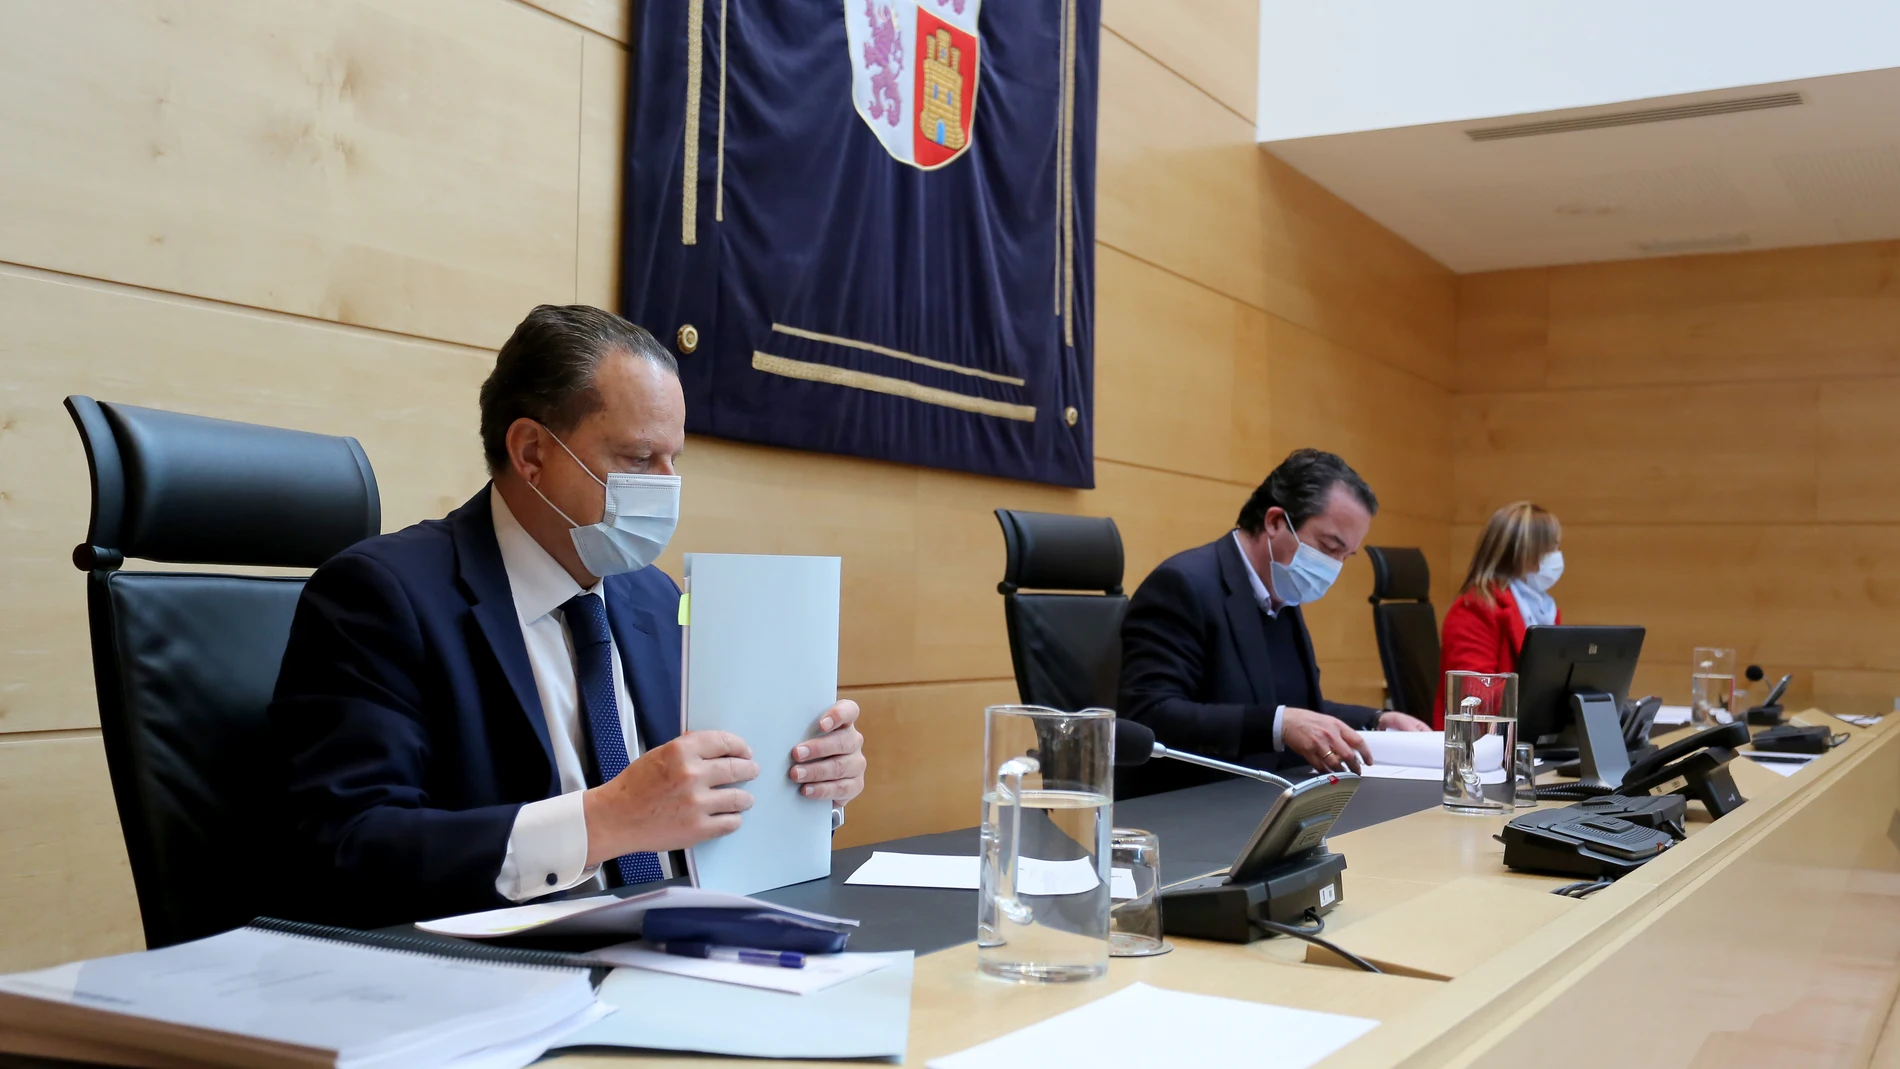 El presidente del Consejo de Cuentas de Castilla y León, Mario Amilivia, presenta dos nuevos informes de fiscalización, referentes al sector público local, ante la Comisión de Economía y Hacienda de las Cortes